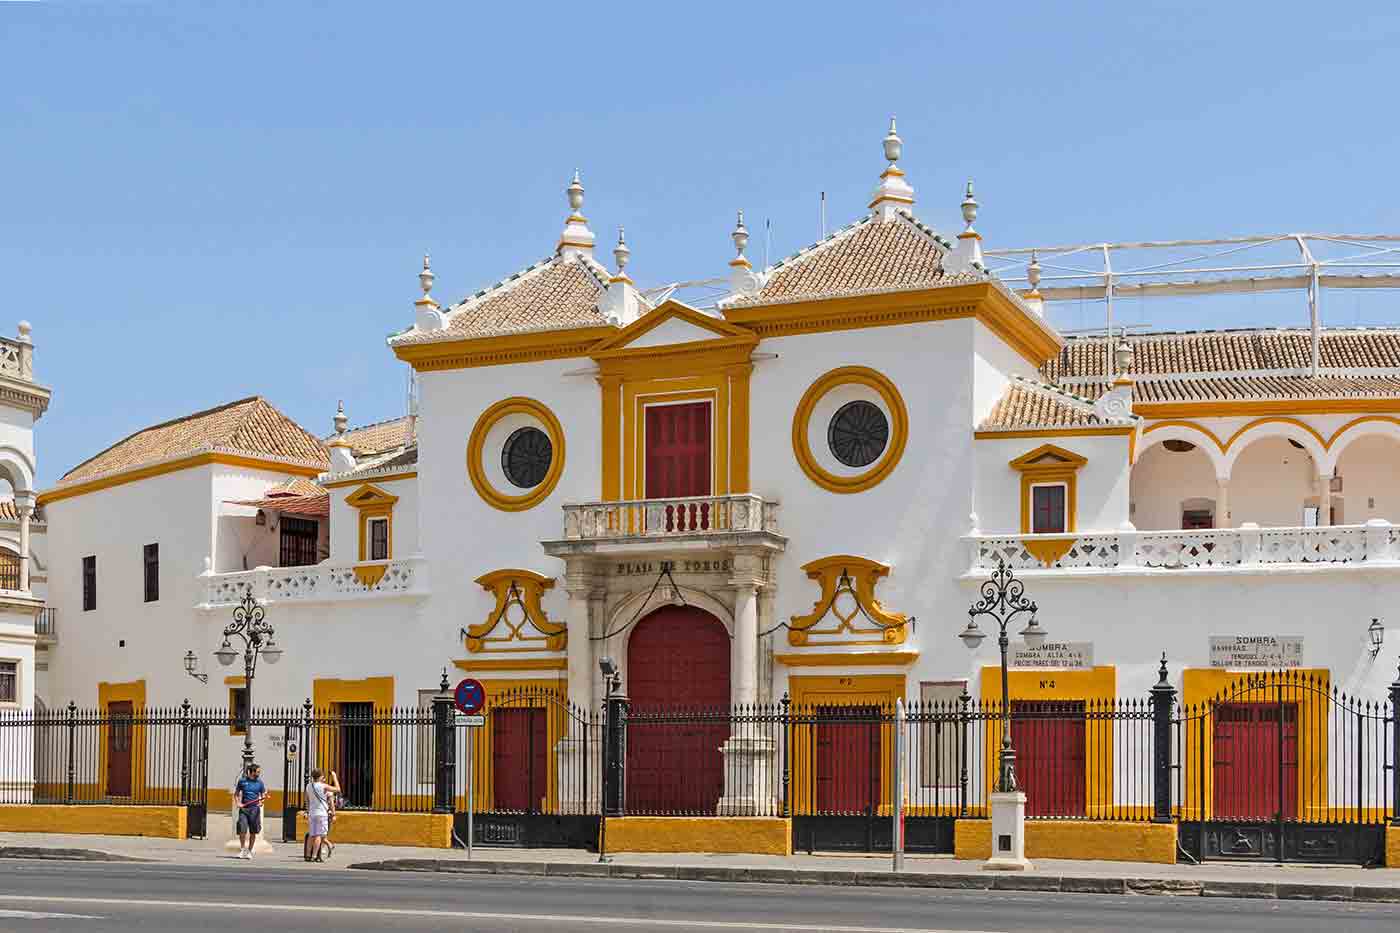 Plaza de toros de la Real Maestranza de Caballería